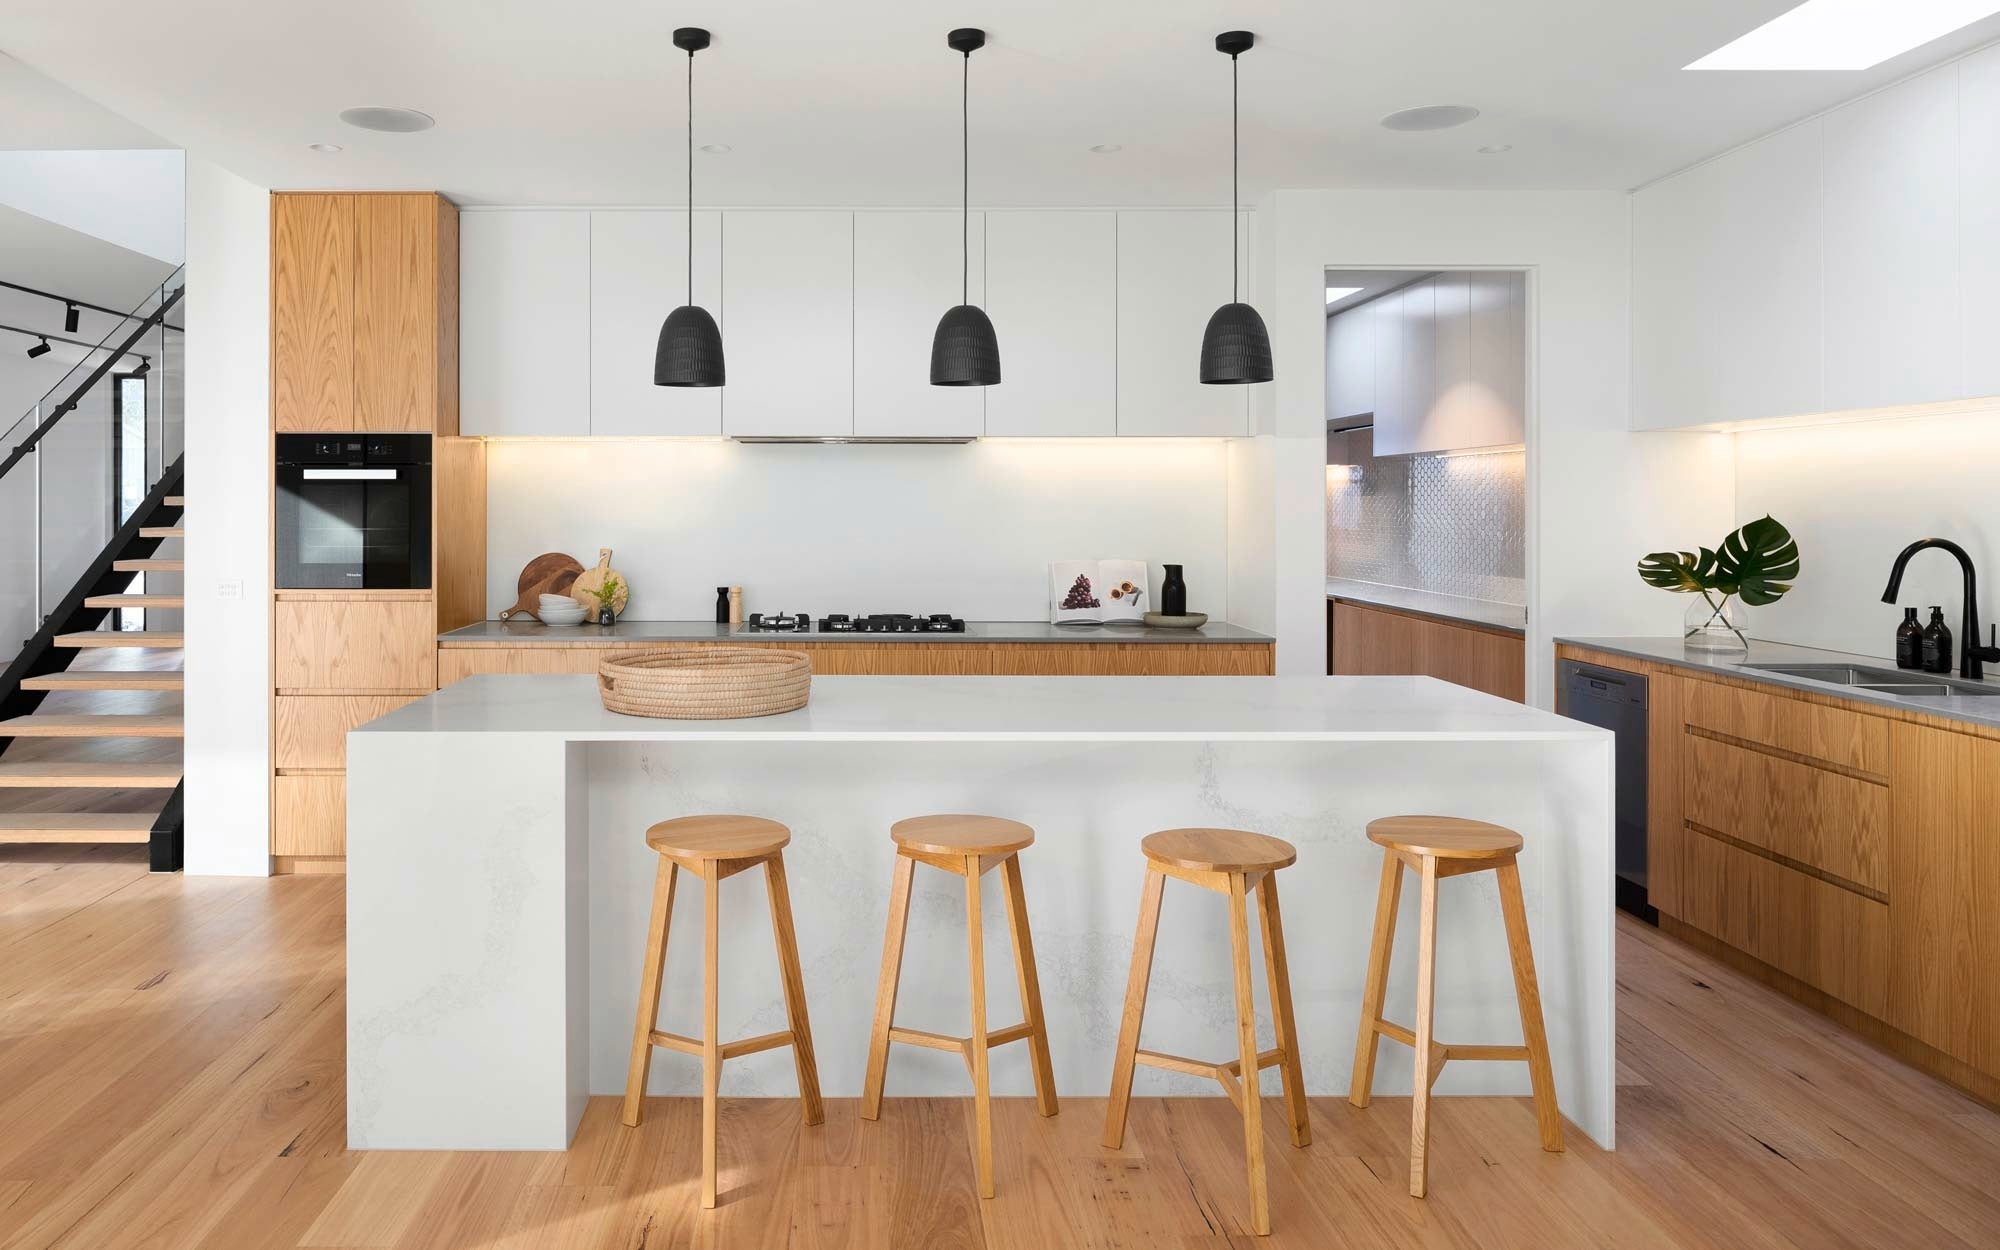 minimalism kitchen - kitchen - veneered flooring - warm wood kitchen